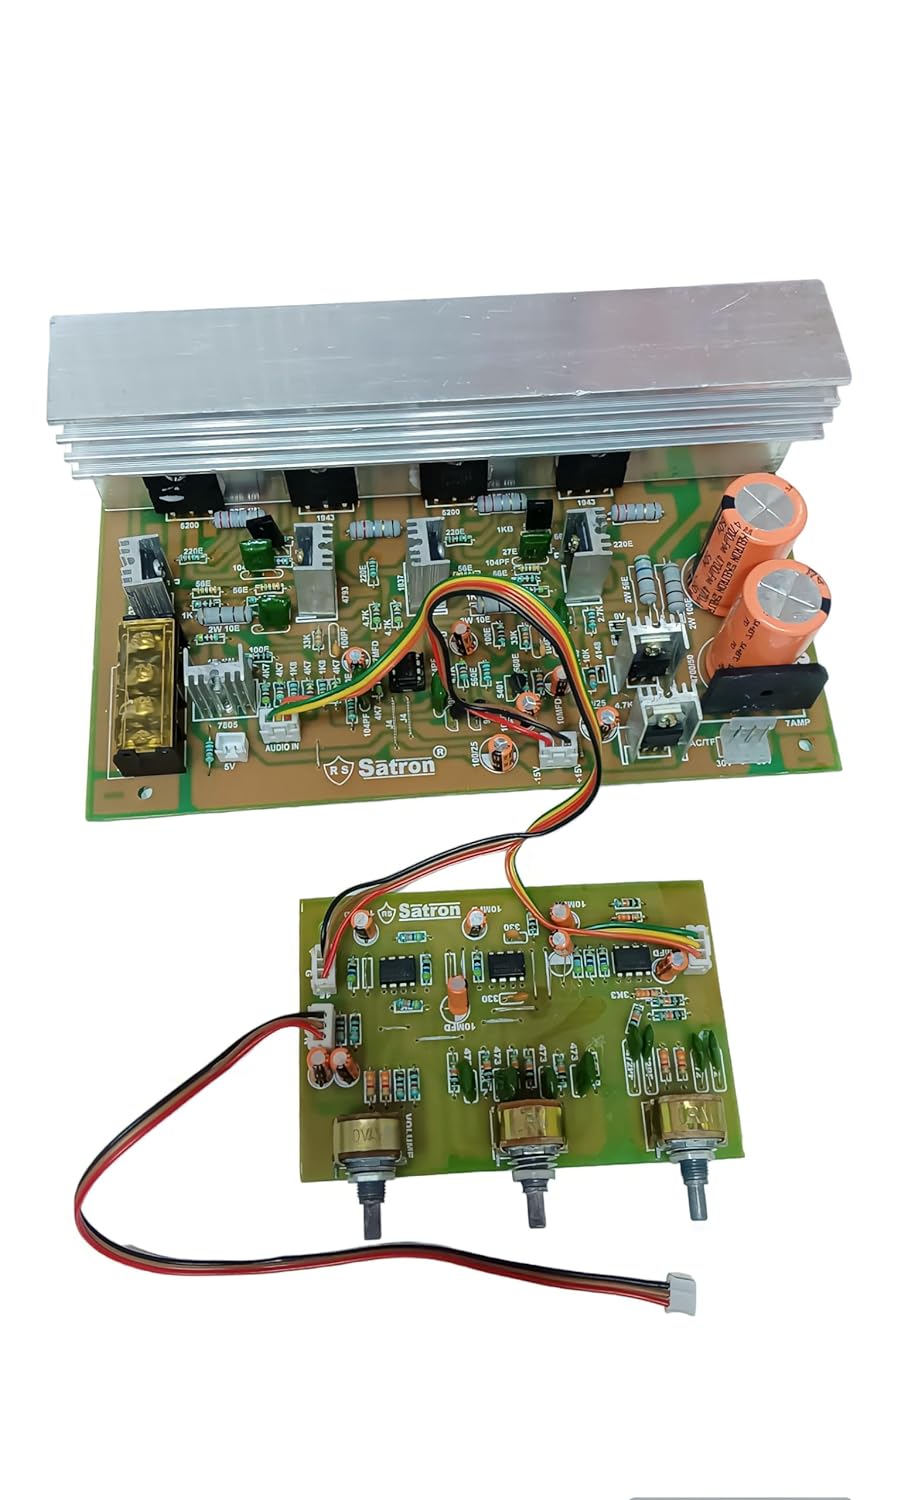 Hi- Fi 5200 AC 24-0-24 audio amplifier circuit board heavy duty